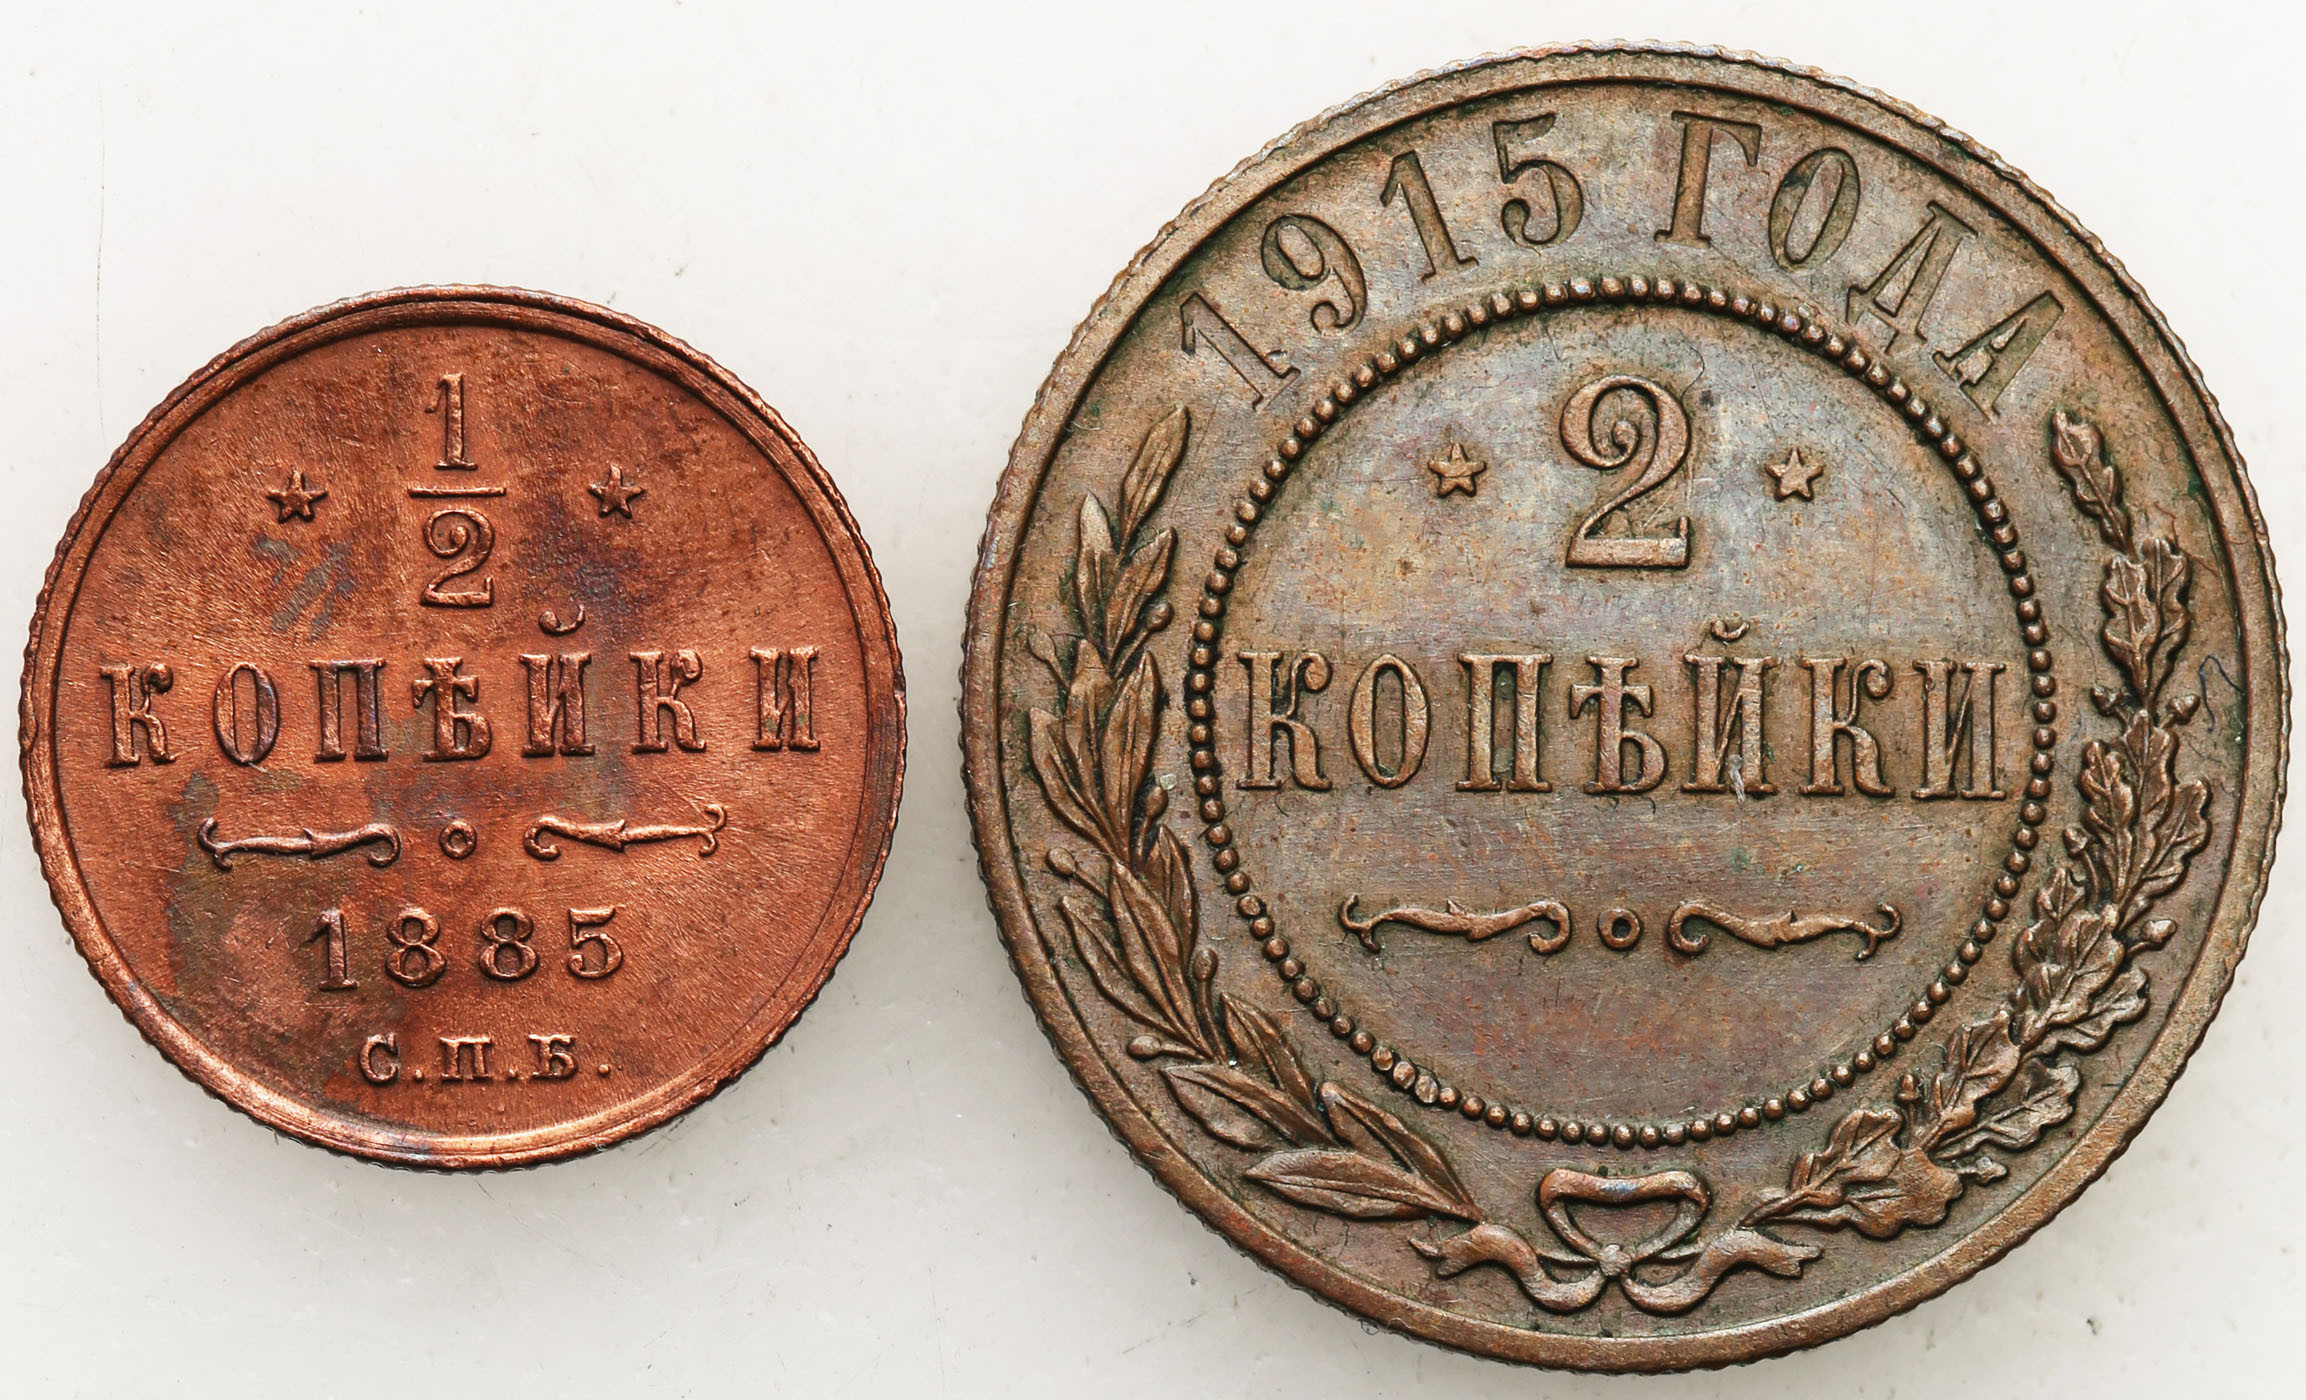 Rosja, Aleksander III, Mikołaj II. 1/2 kopiejki 1885, 2 kopiejki 1915, zestaw 2 monet